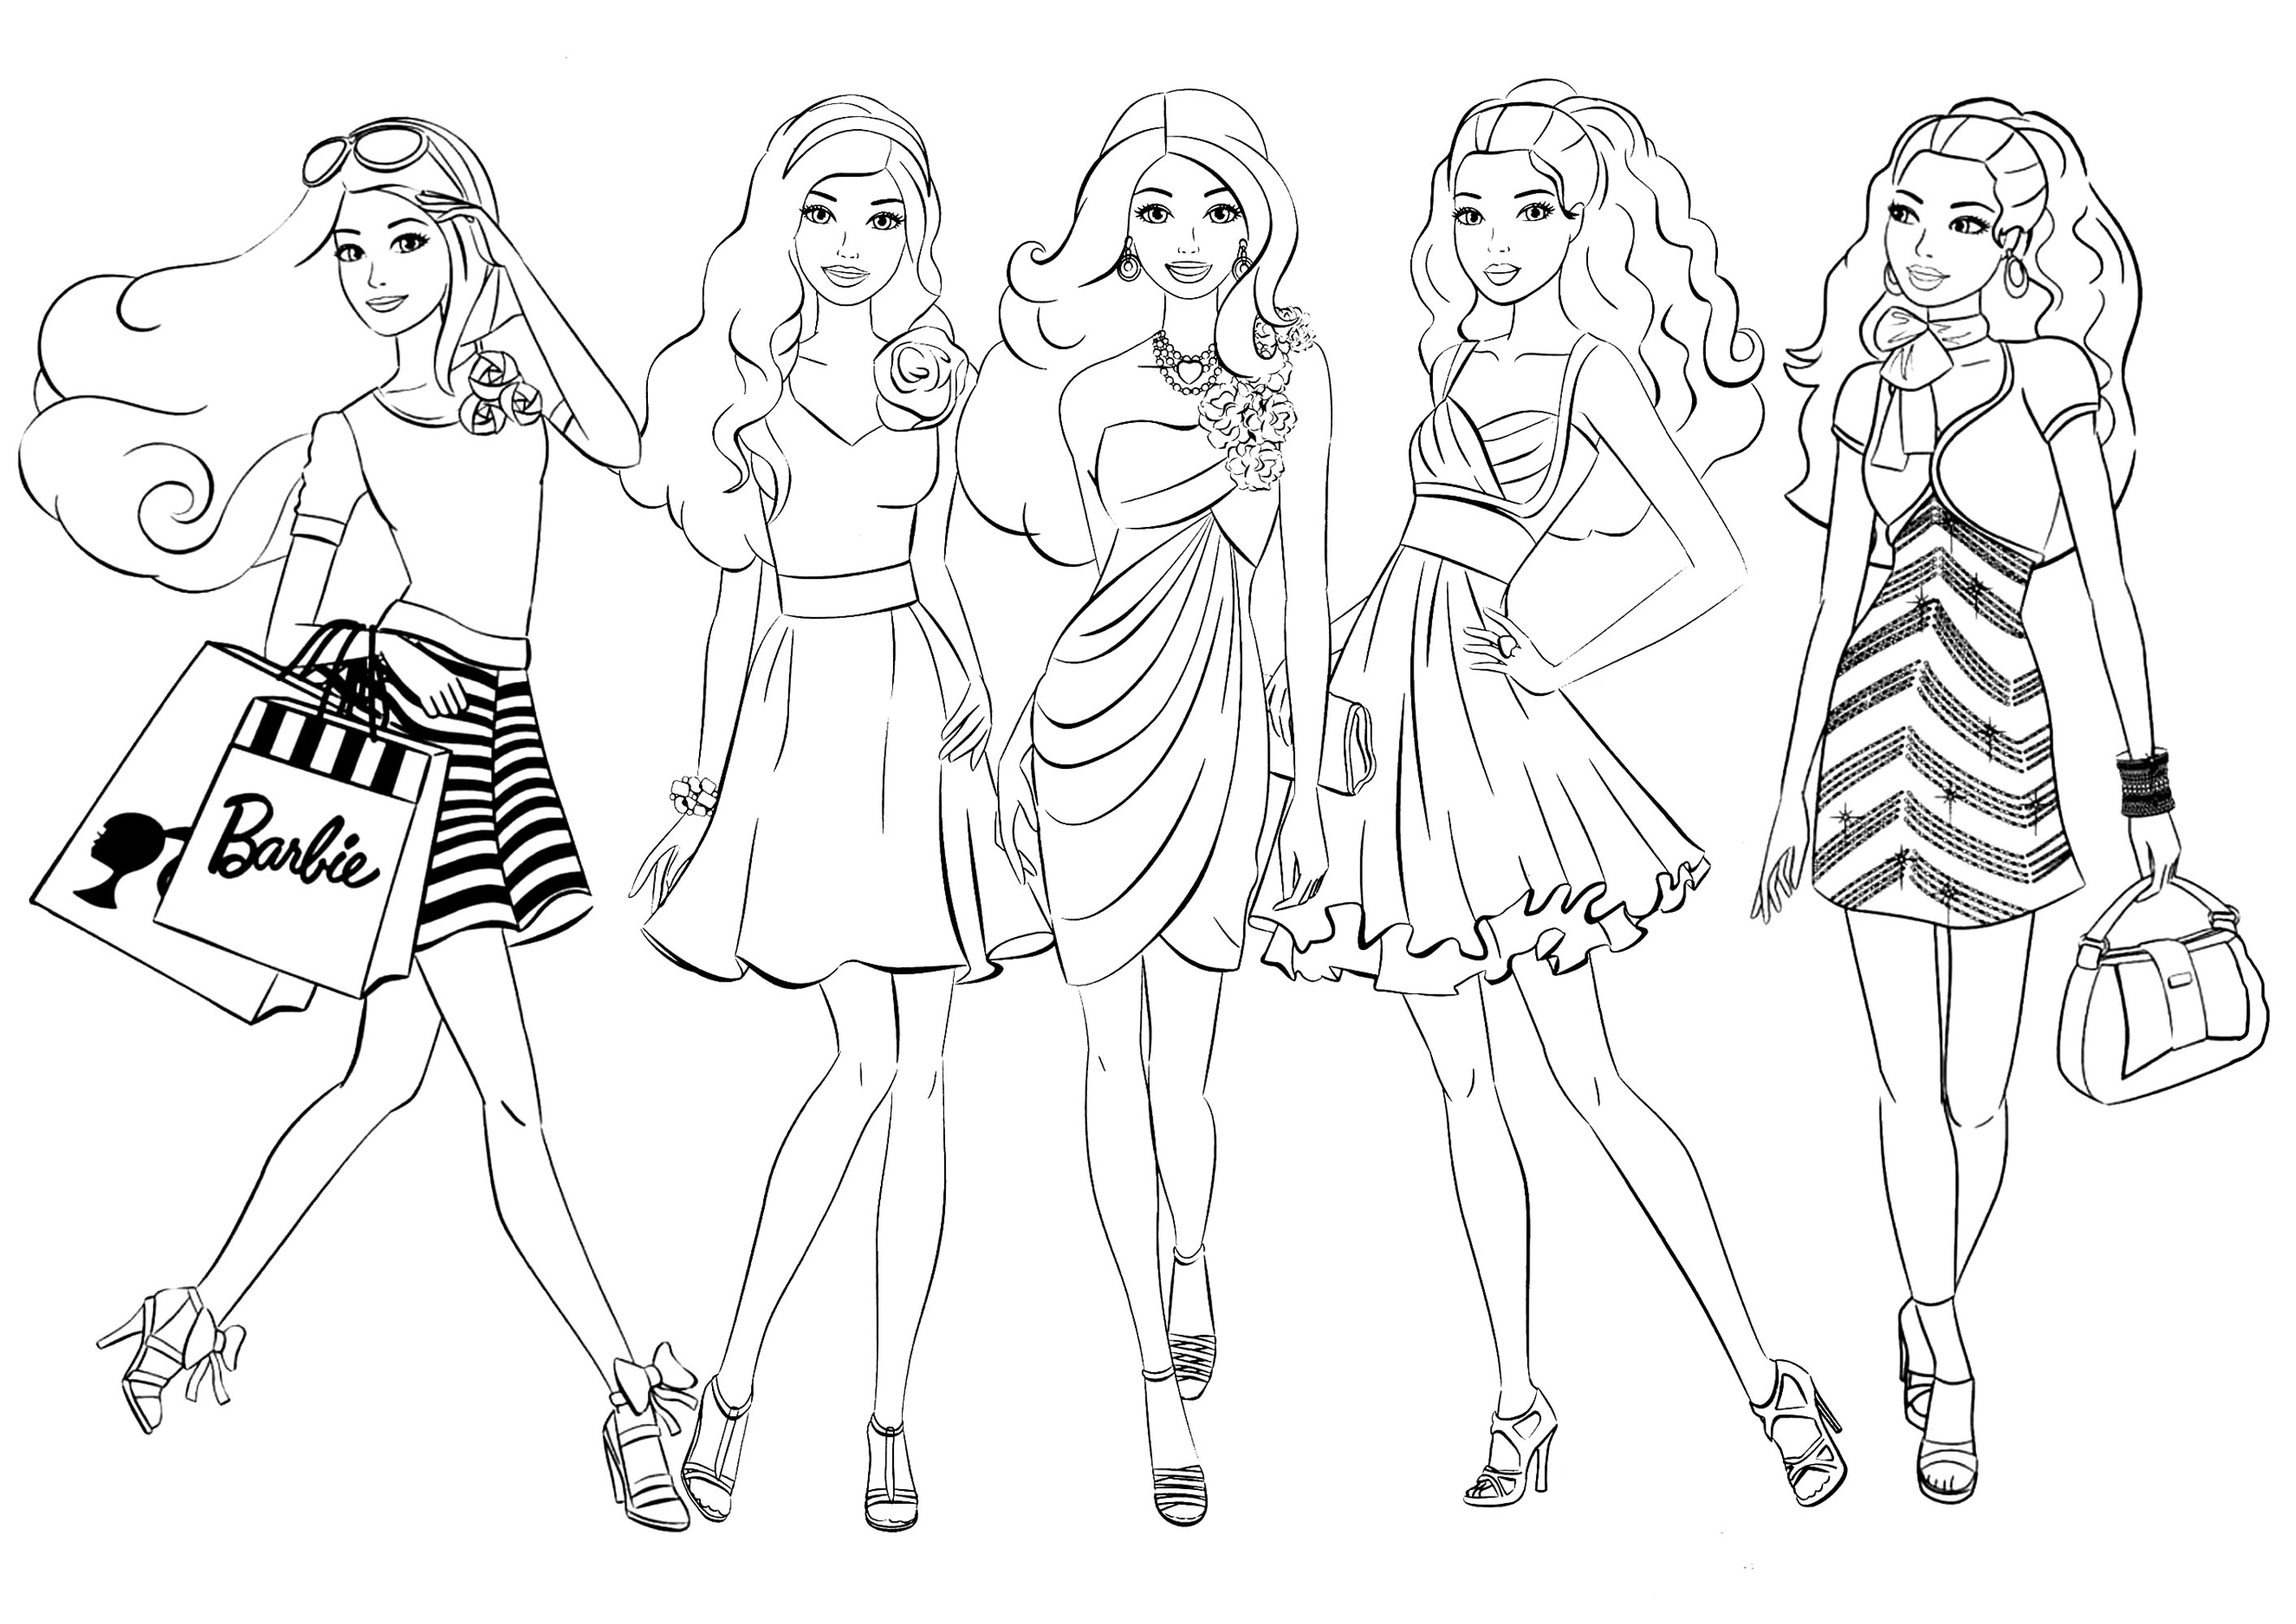 Cinco muñecas Barbie. Esta página para colorear presenta cinco personajes inspirados en las muñecas Barbie, con diferentes trajes para que los colorees a tu gusto.